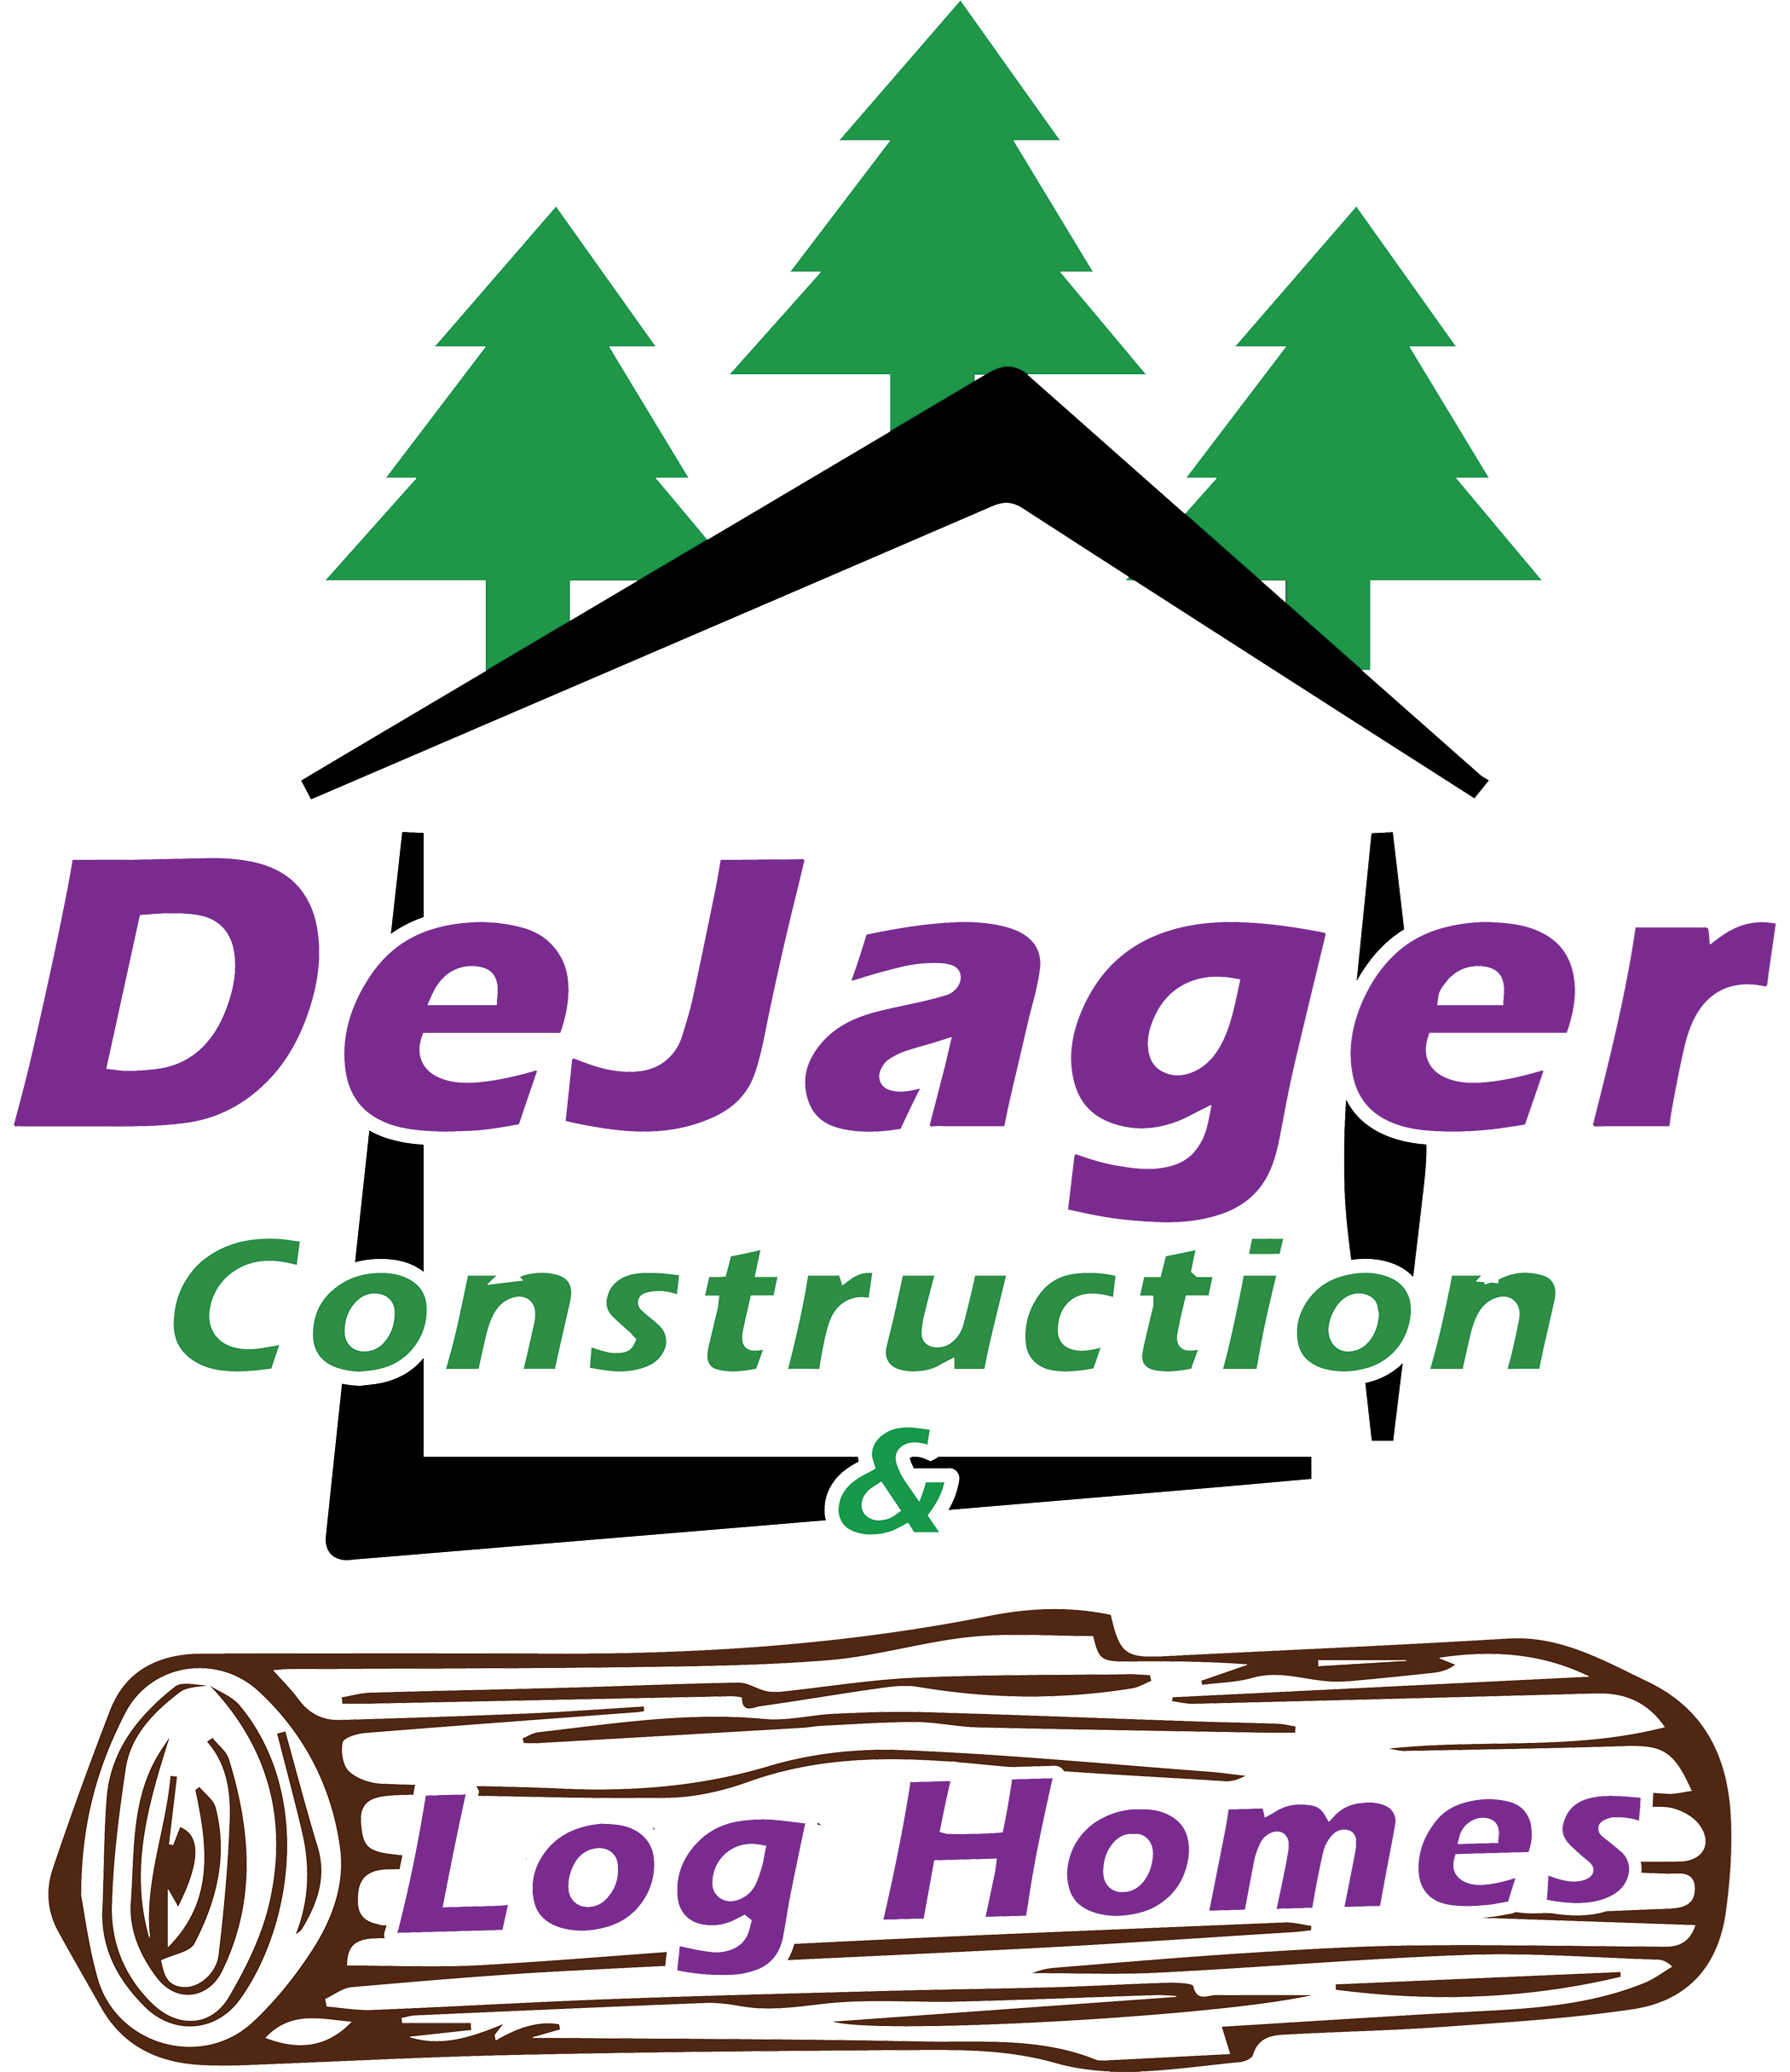 DeJager Construction & Log Homes